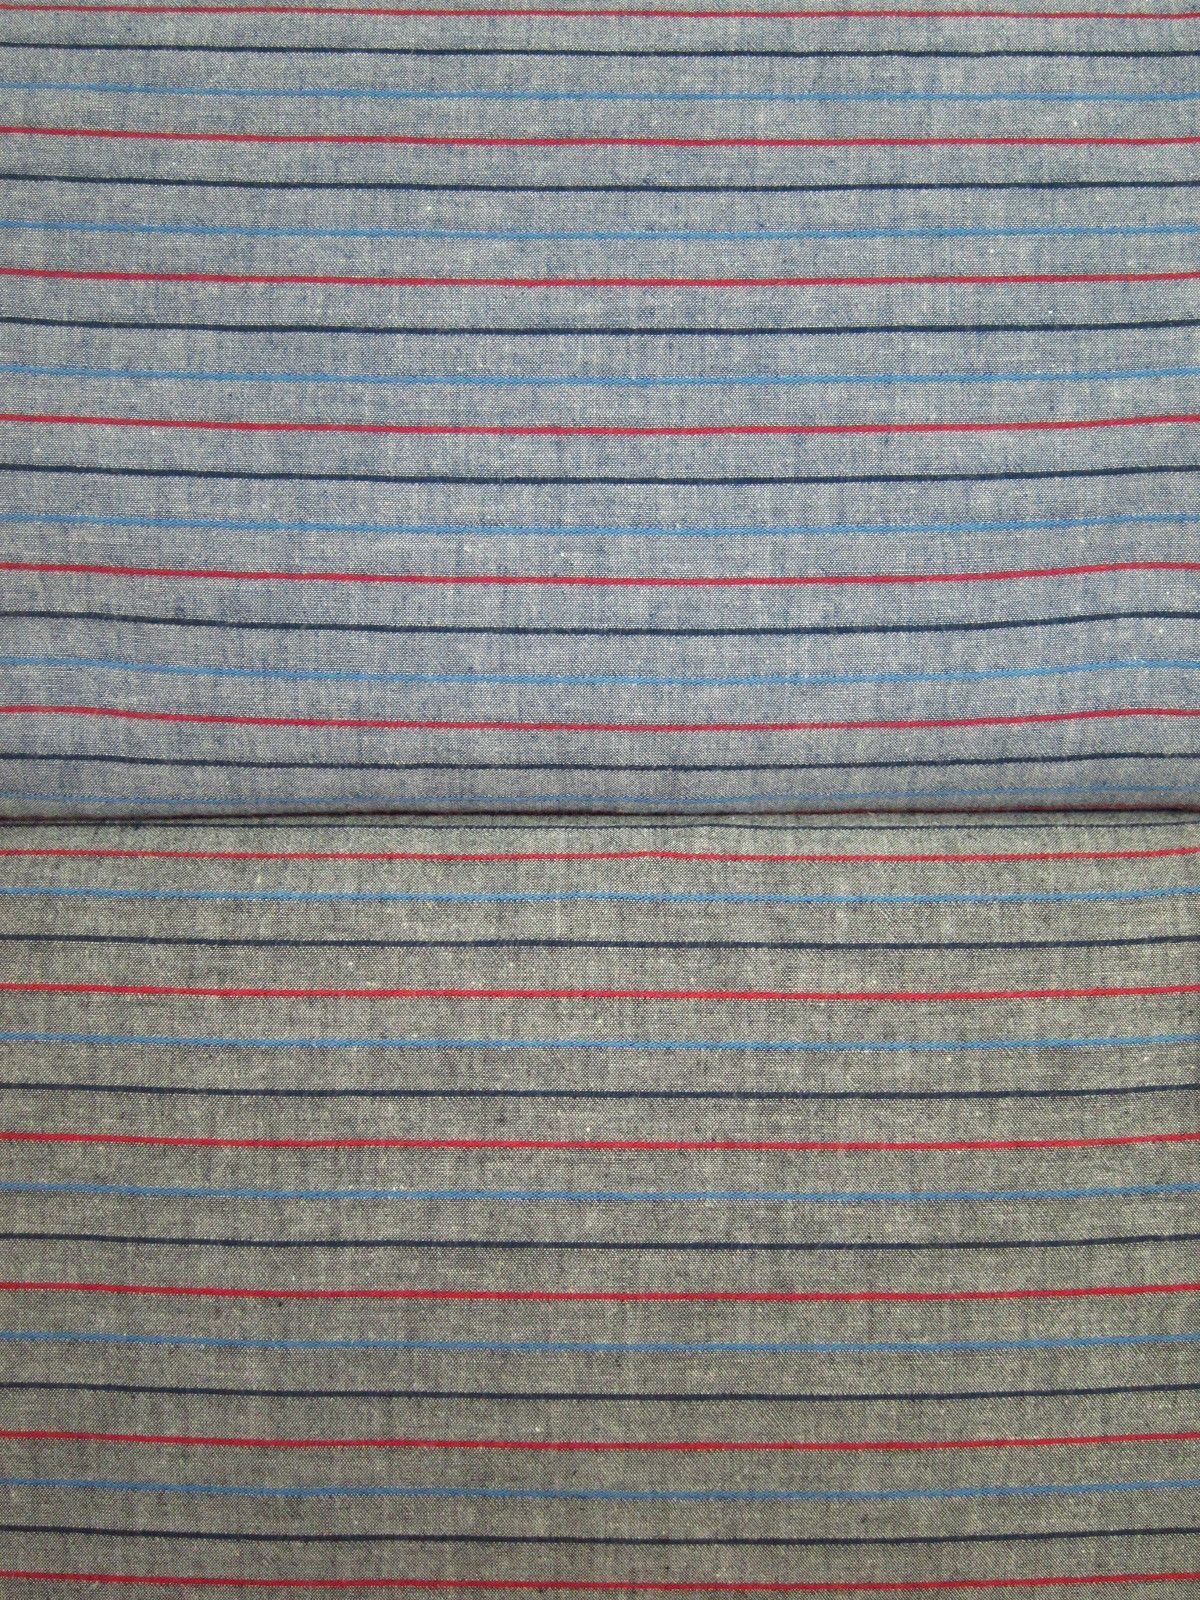 日本進口先染布-藍紅細織條-淺灰底、深灰底-100%純綿、日本製造